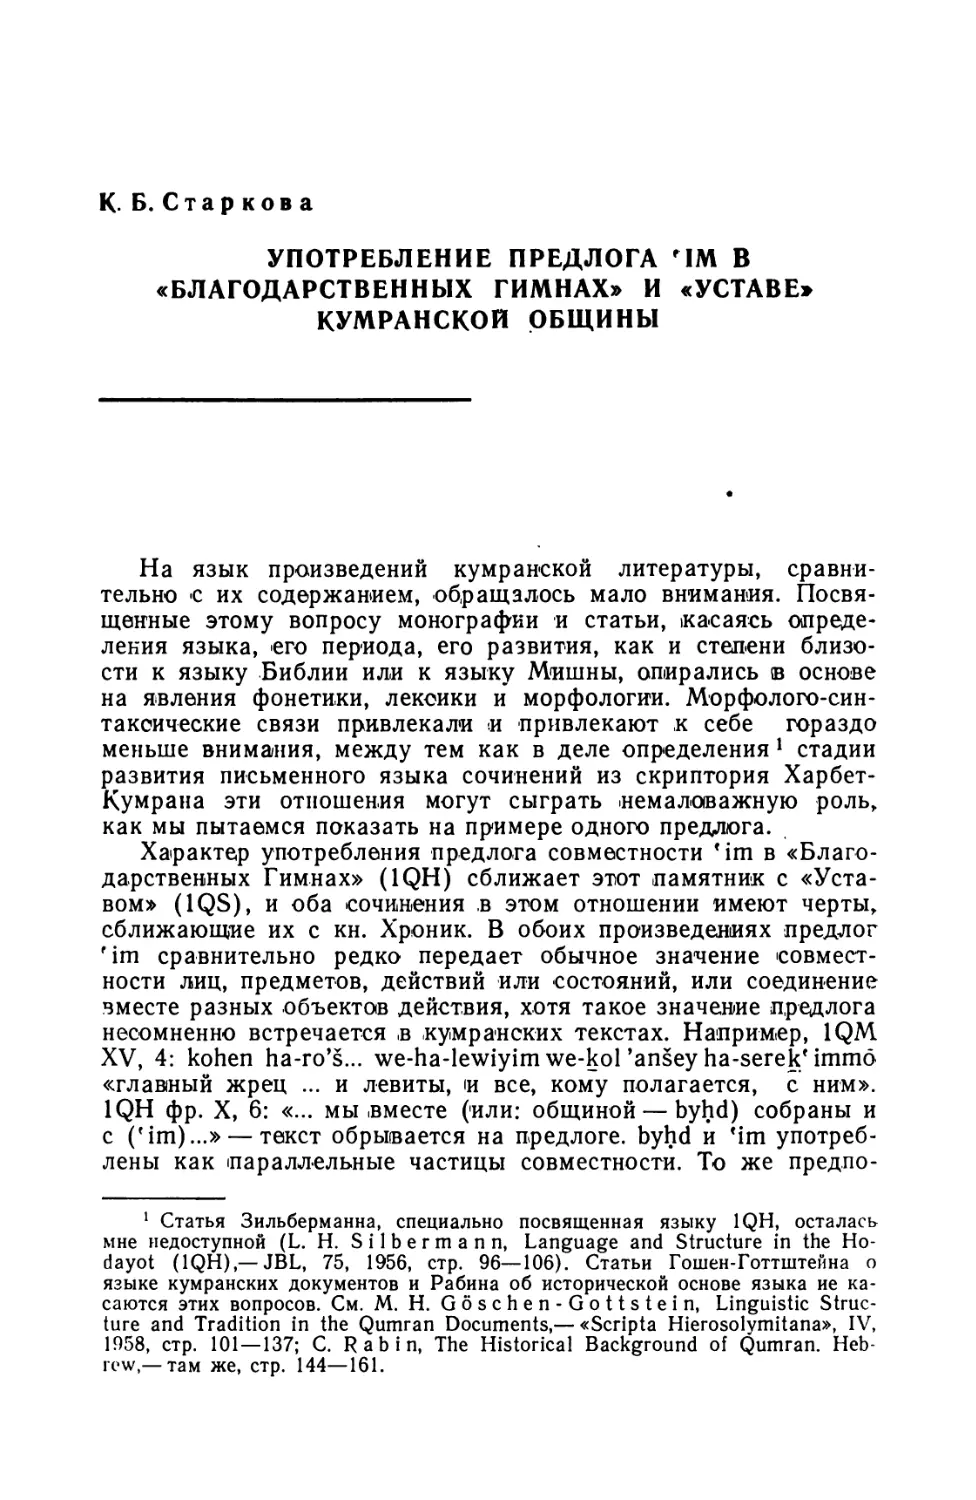 К. Б. Старкова, Употребление предлога Mm в «Благодарственных гимнах» и «Уставе» Кумранской общины